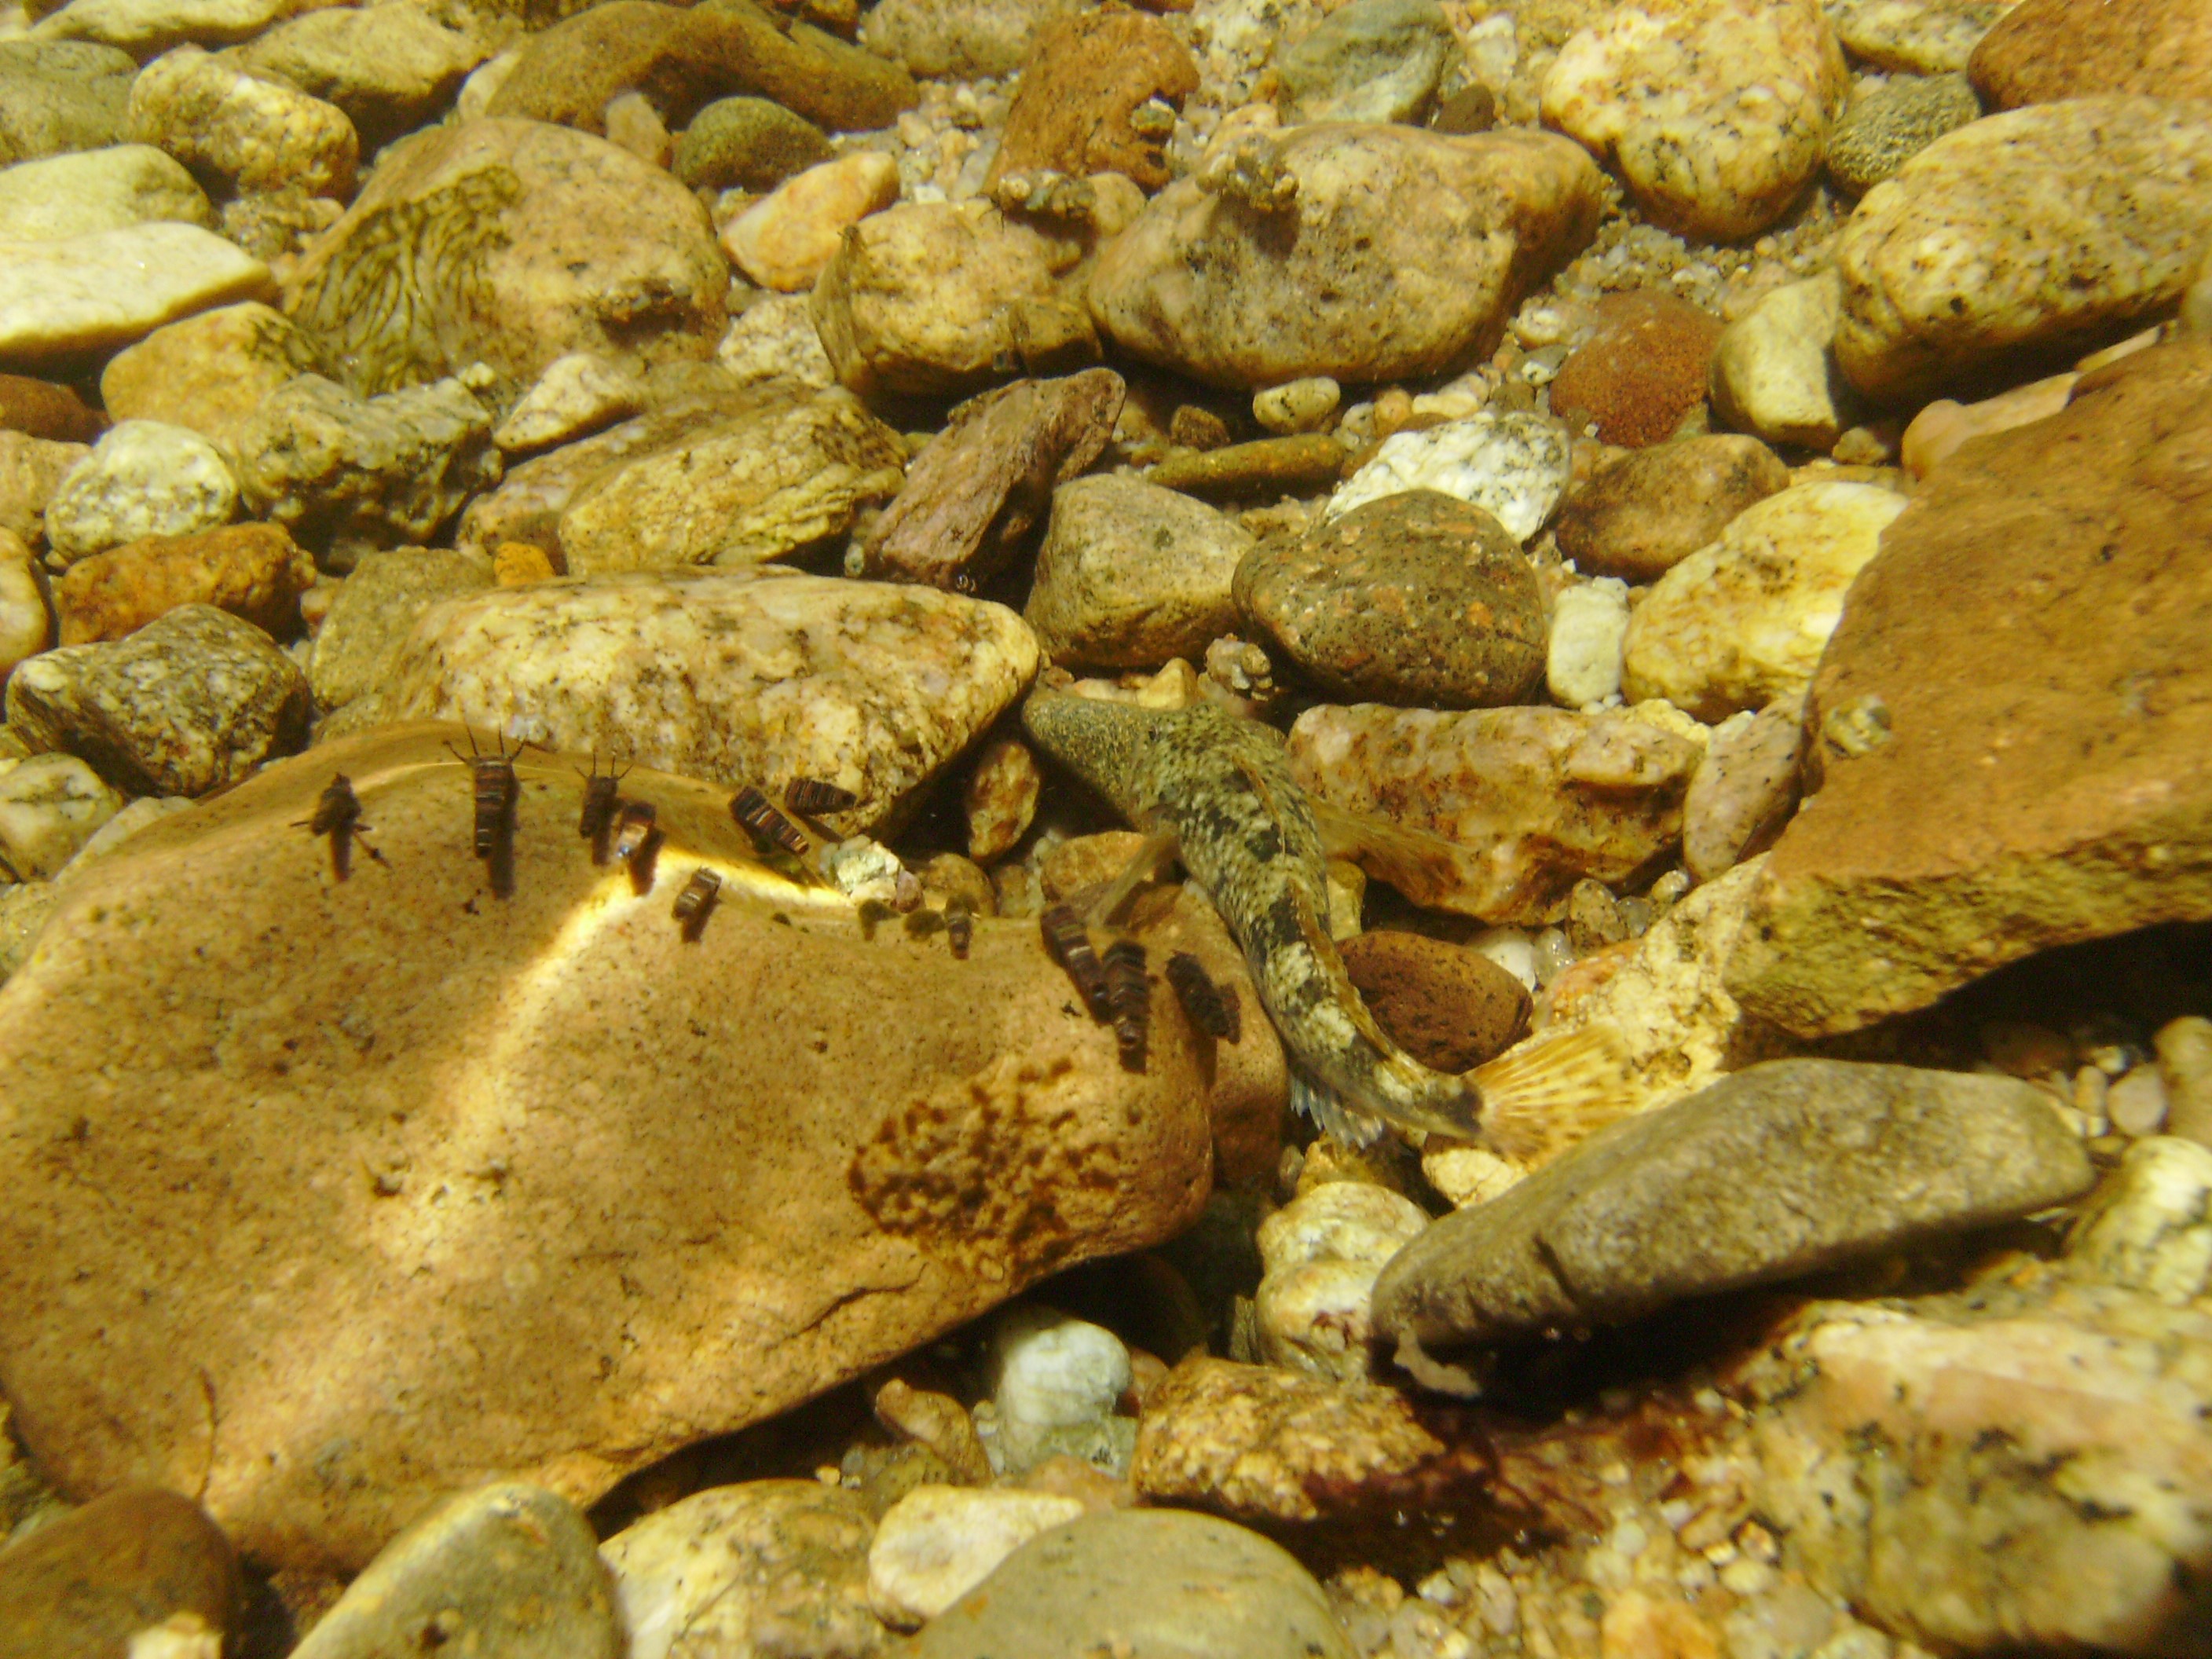 Sculpin underwater camouflage